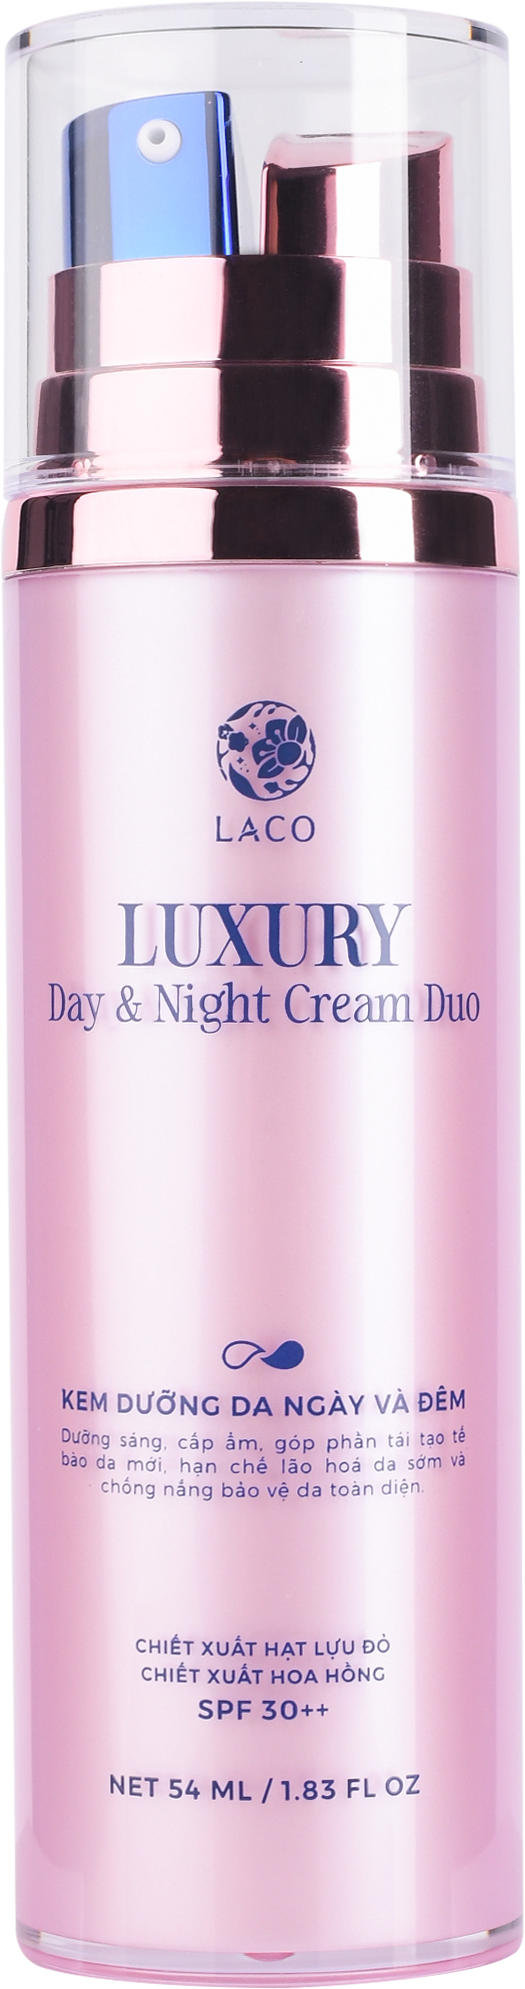 Kem Dưỡng Da Laco Luxury DAY &amp; NIGHT CREAM DUO - kem ngày LACO - kem đêm LACO  ( Giảm giá 240k và Tặng quà trị giá 260k)